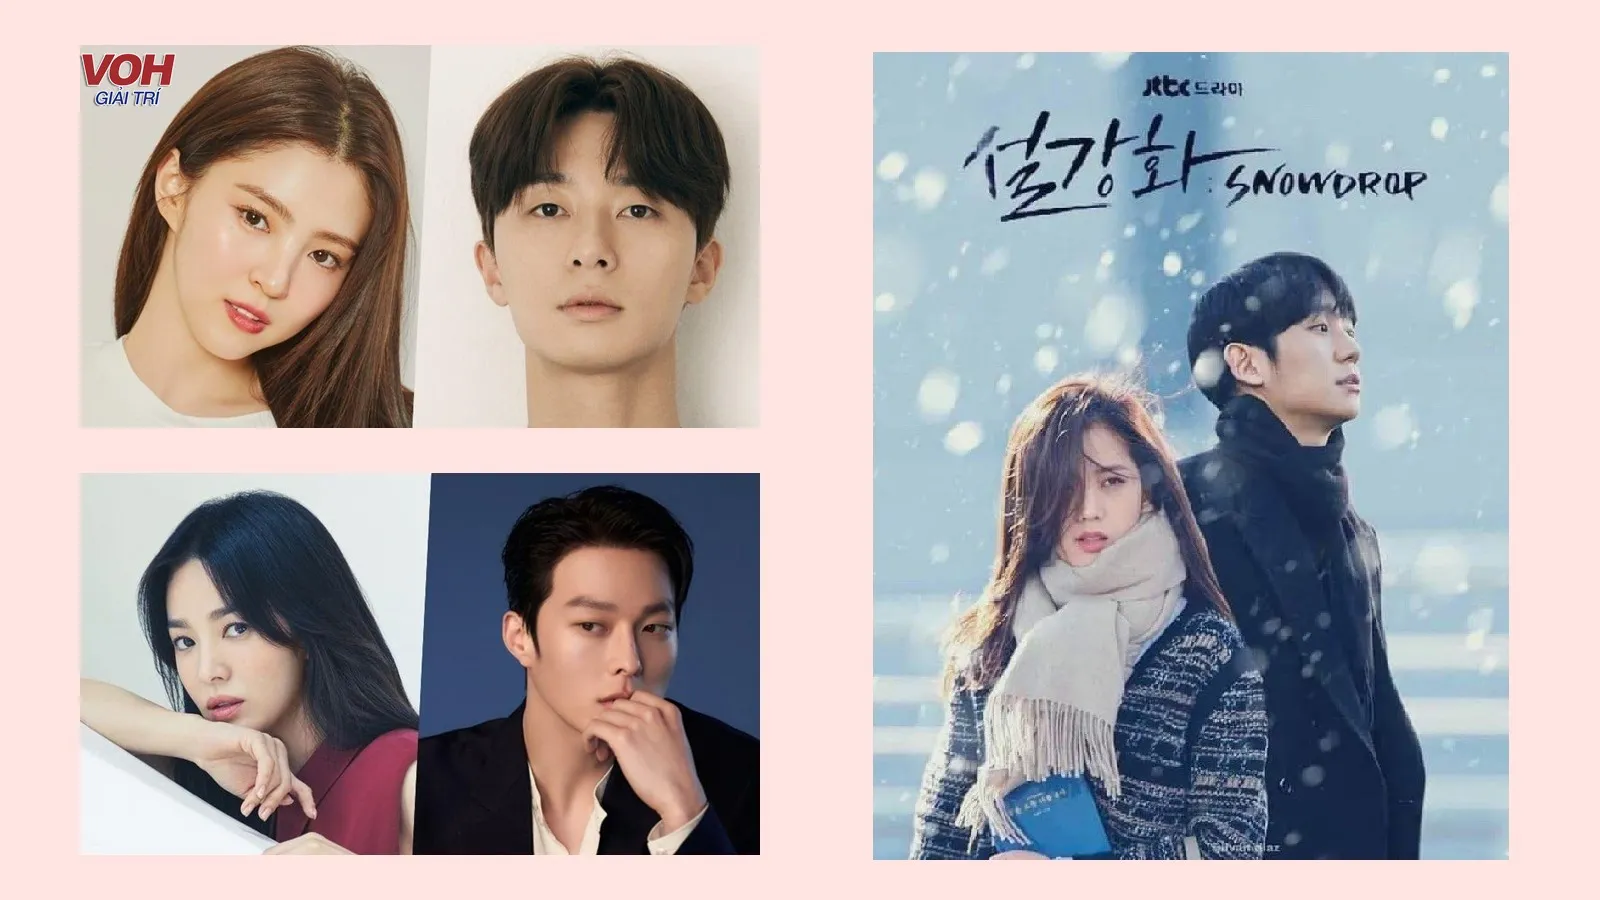 Loạt phim Hàn Quốc lên sóng cuối 2021: Phim của Jisoo, Park Seo Joon đều được mong đợi